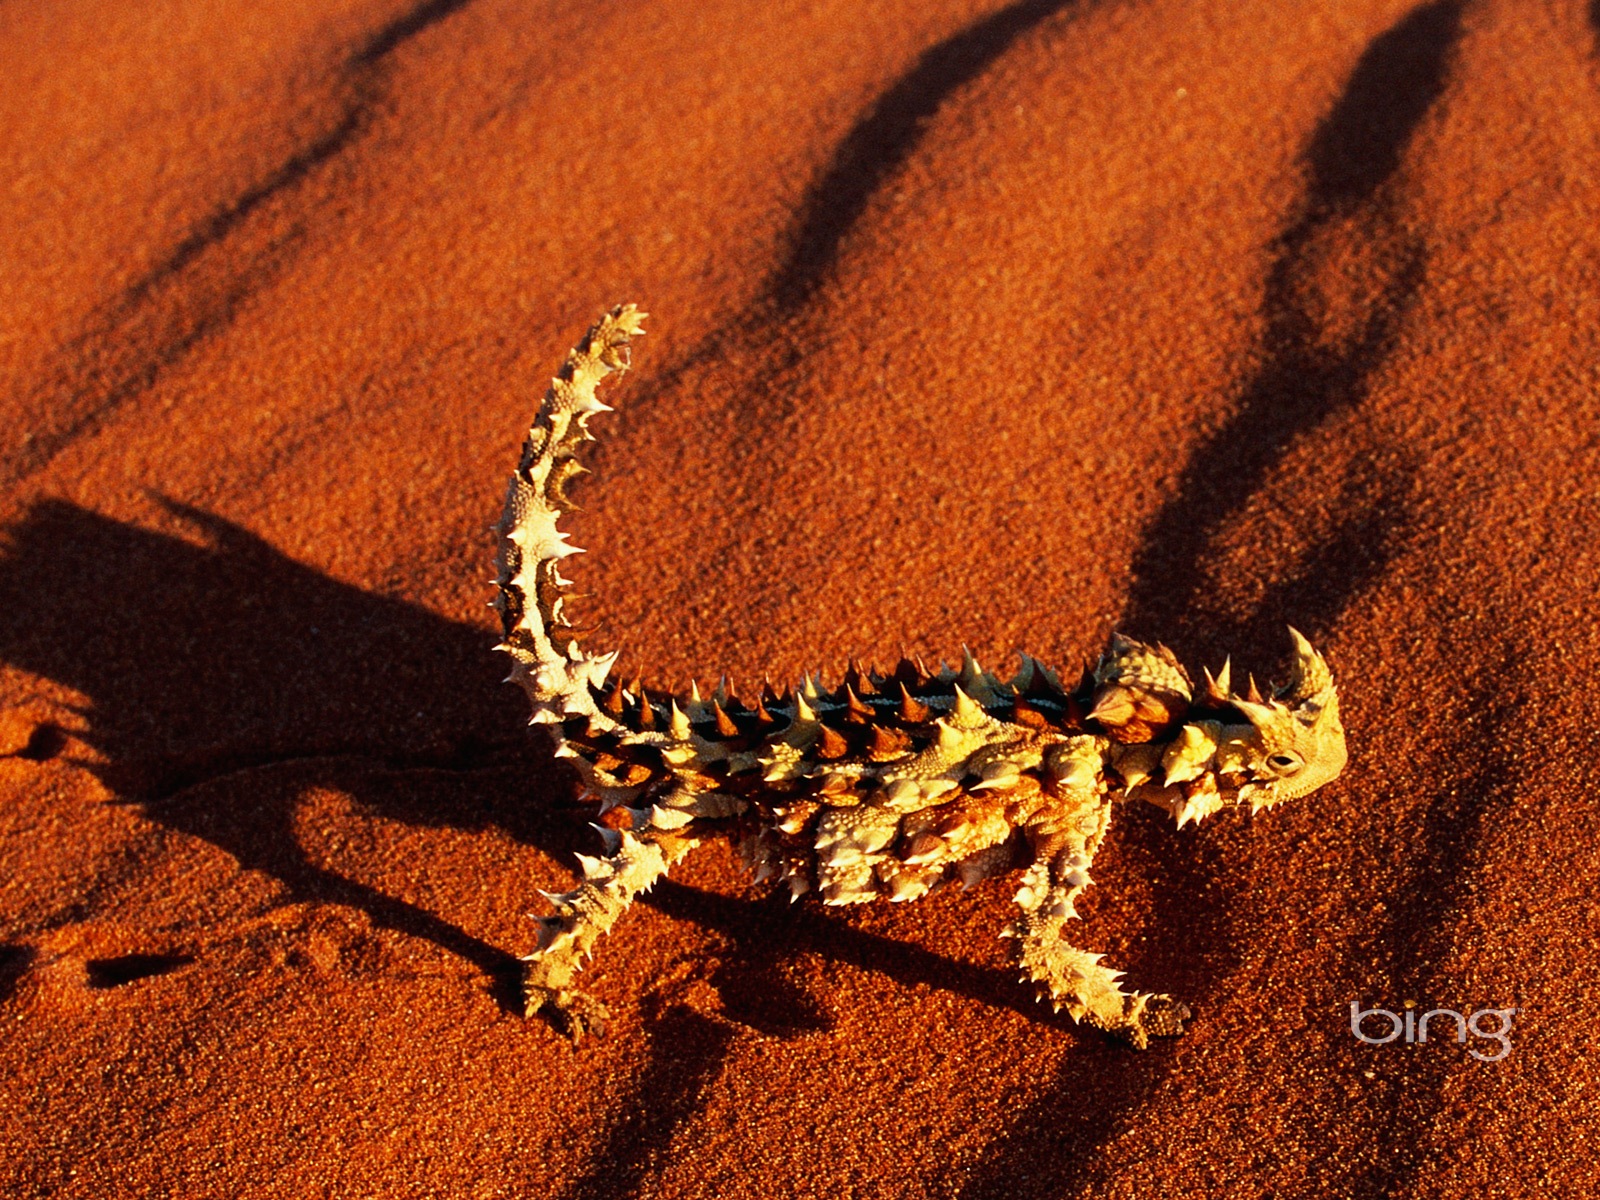 Bing Australie thème fonds d'écran HD, animaux, nature, bâtiments #7 - 1600x1200